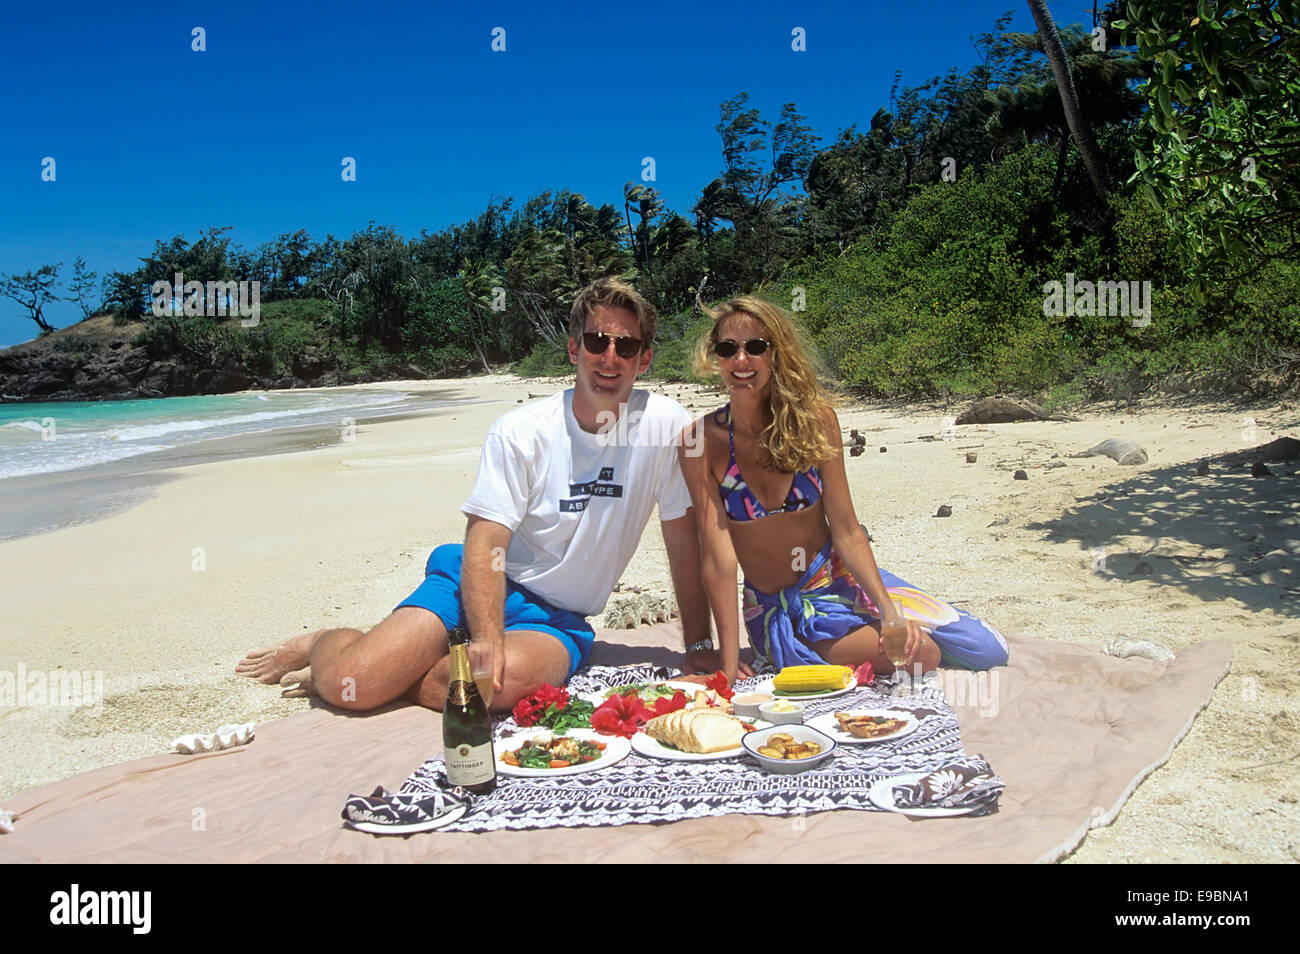 Fuimos de luna de miel la pareja se desliza por una comida en su propia playa privada en la Isla Tortuga, Fiji. Foto de stock